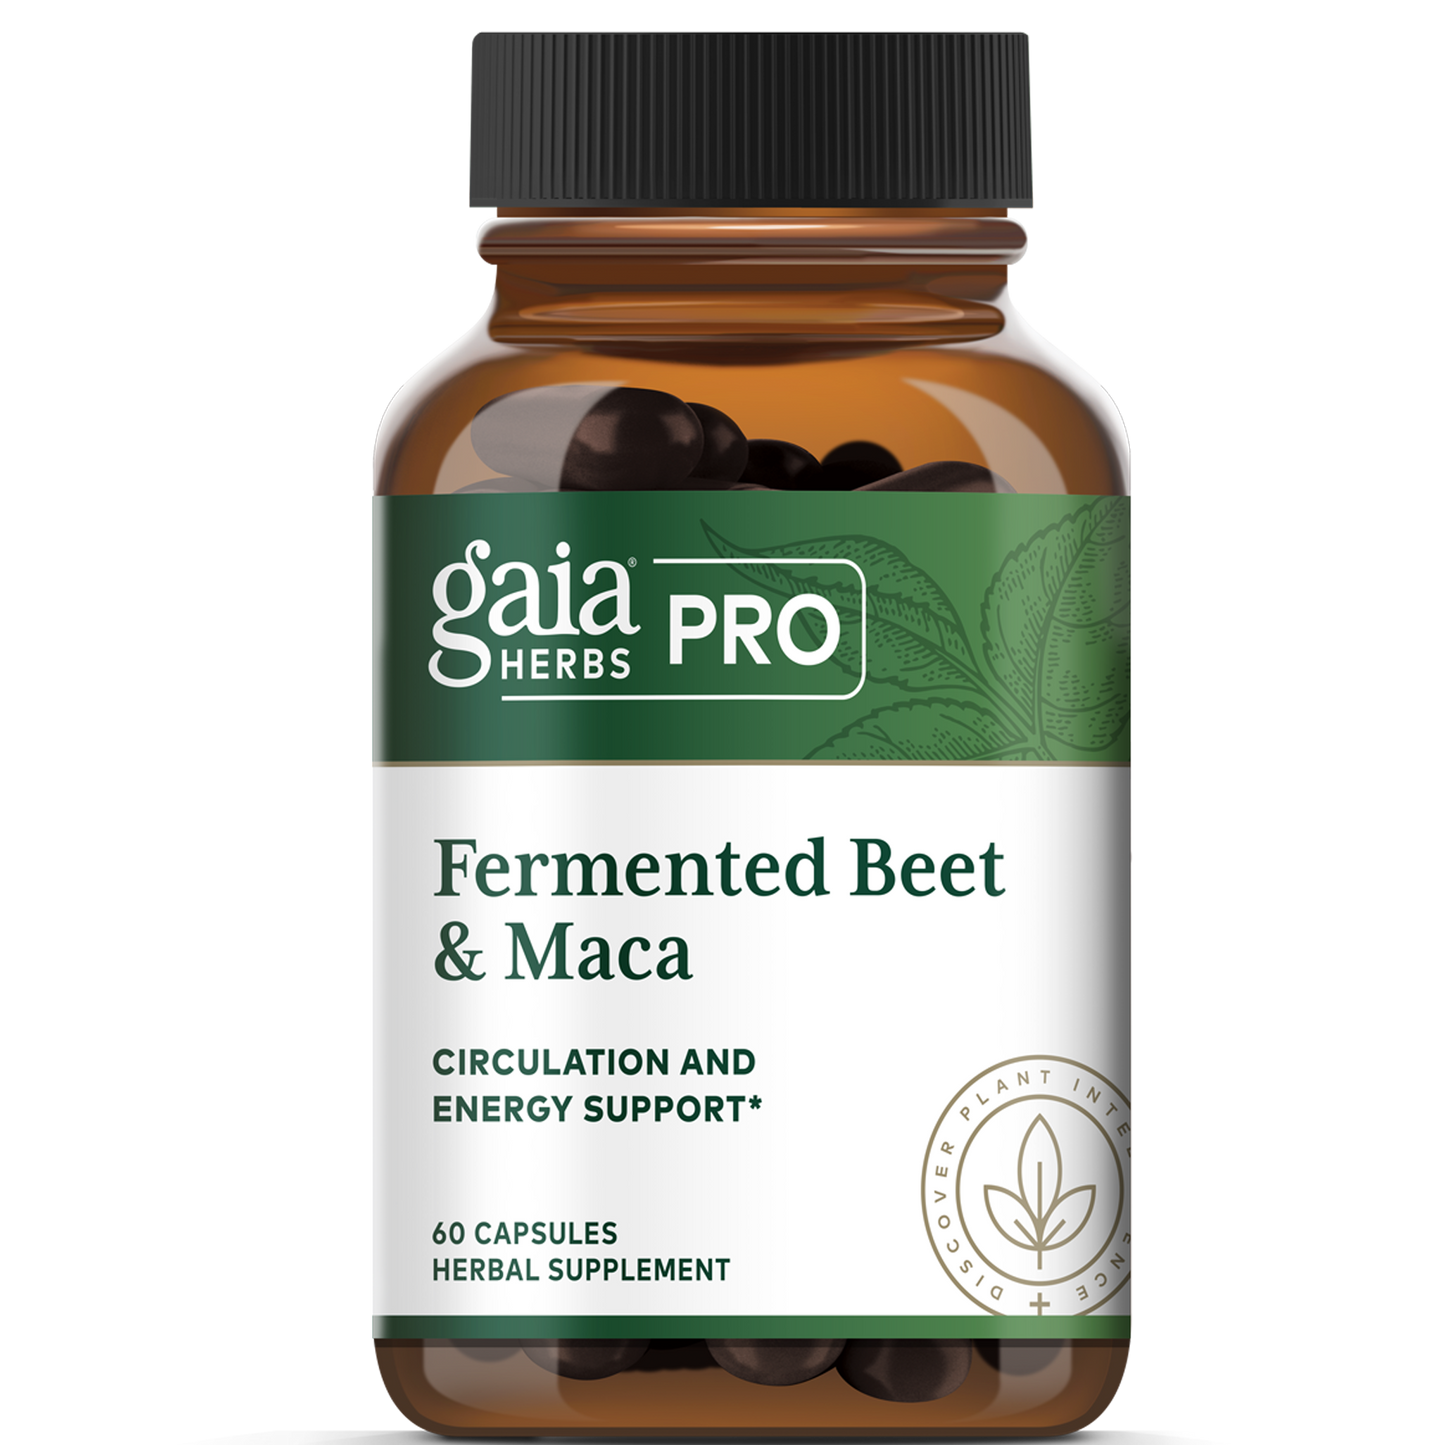 Fermented Beet & Maca